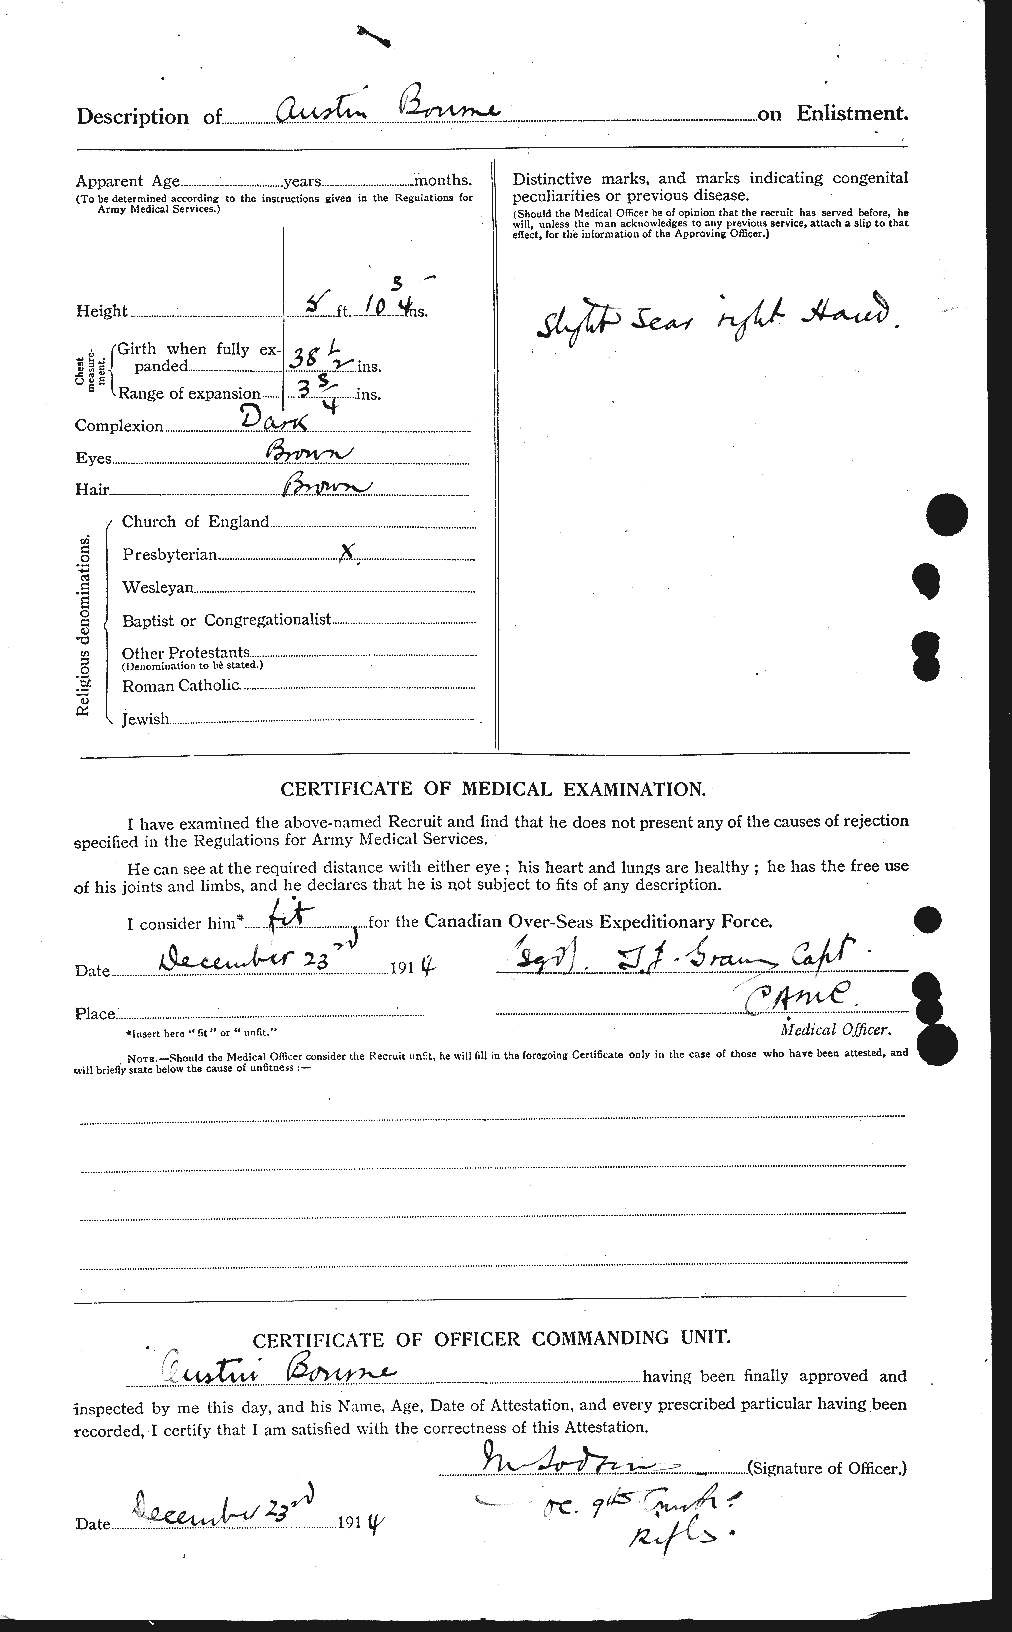 Dossiers du Personnel de la Première Guerre mondiale - CEC 254099b